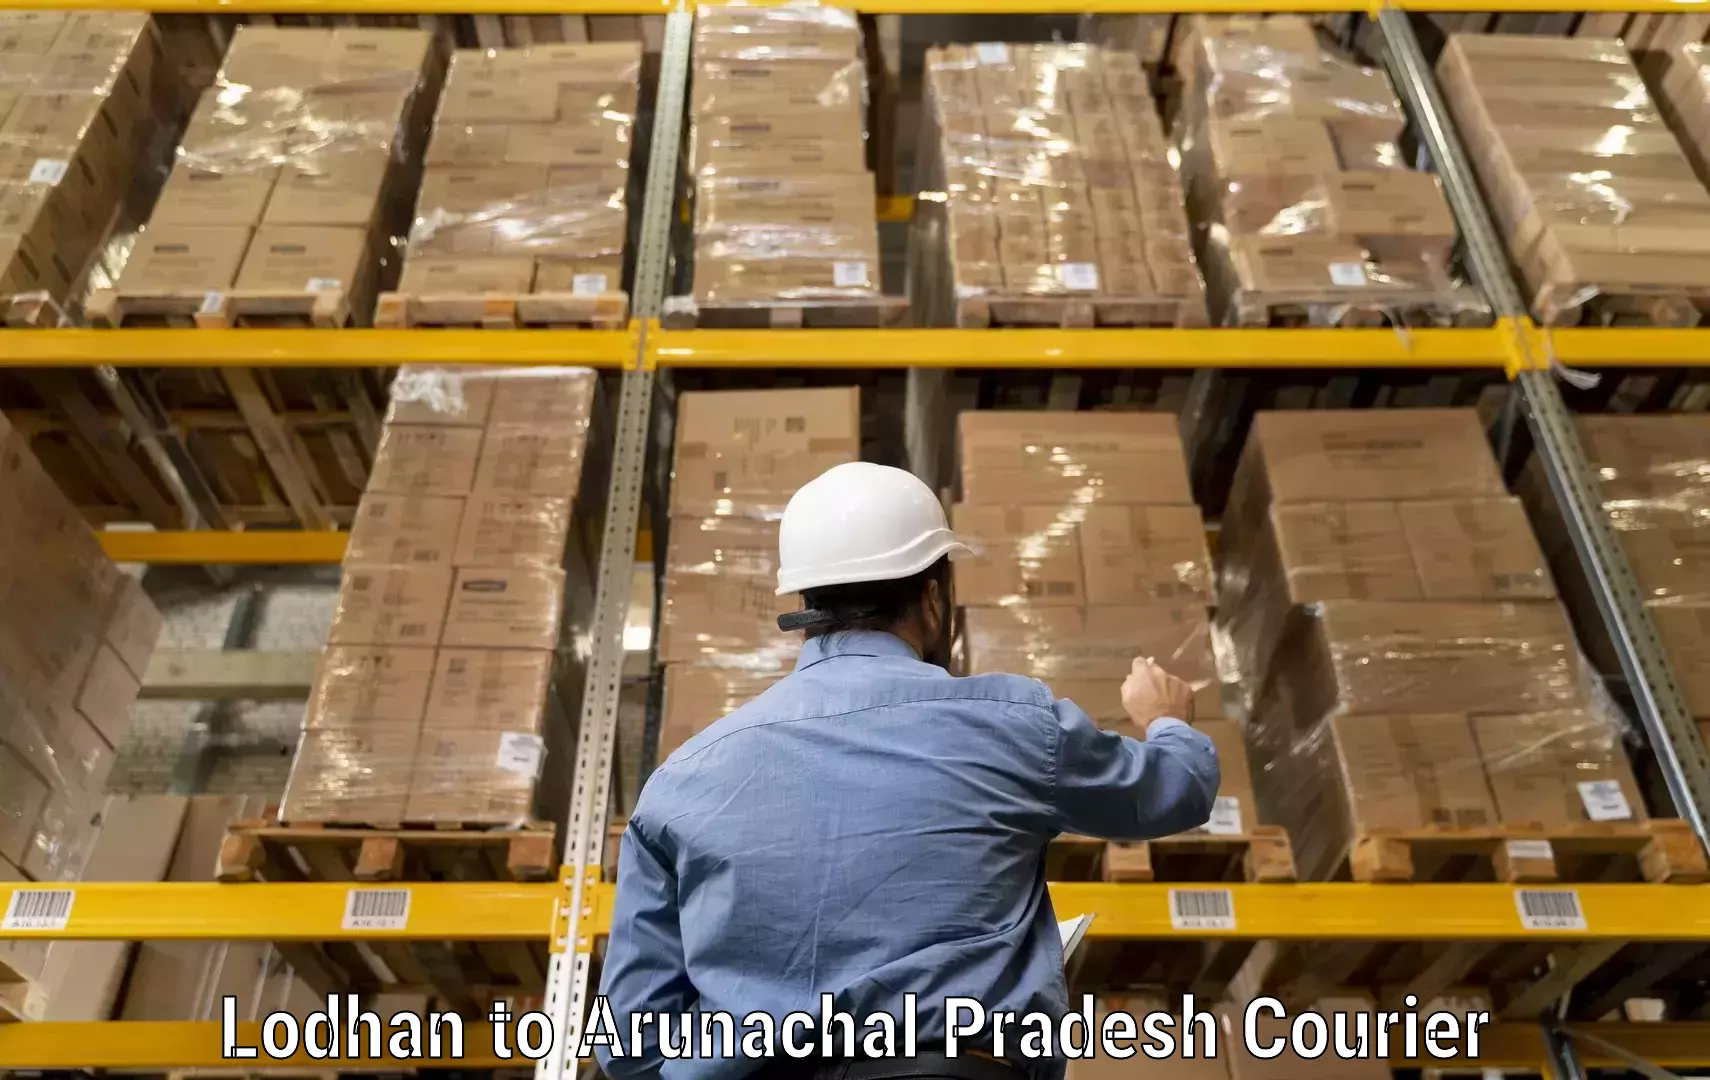 Global parcel delivery Lodhan to Arunachal Pradesh